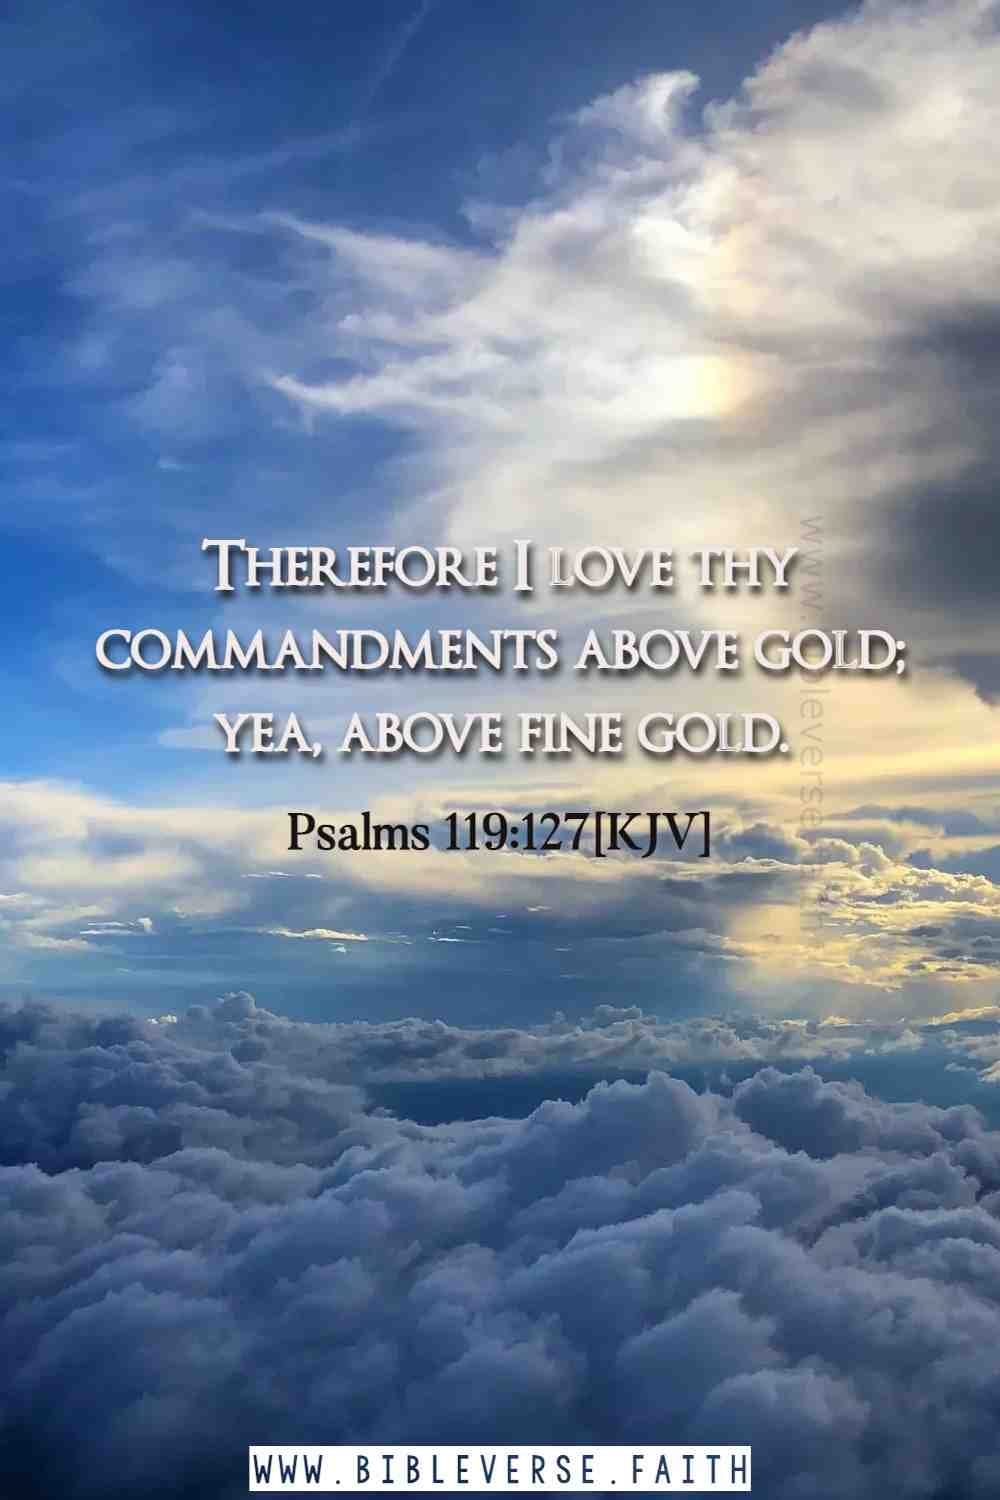 psalms 119 127[kjv] psalms about god's love